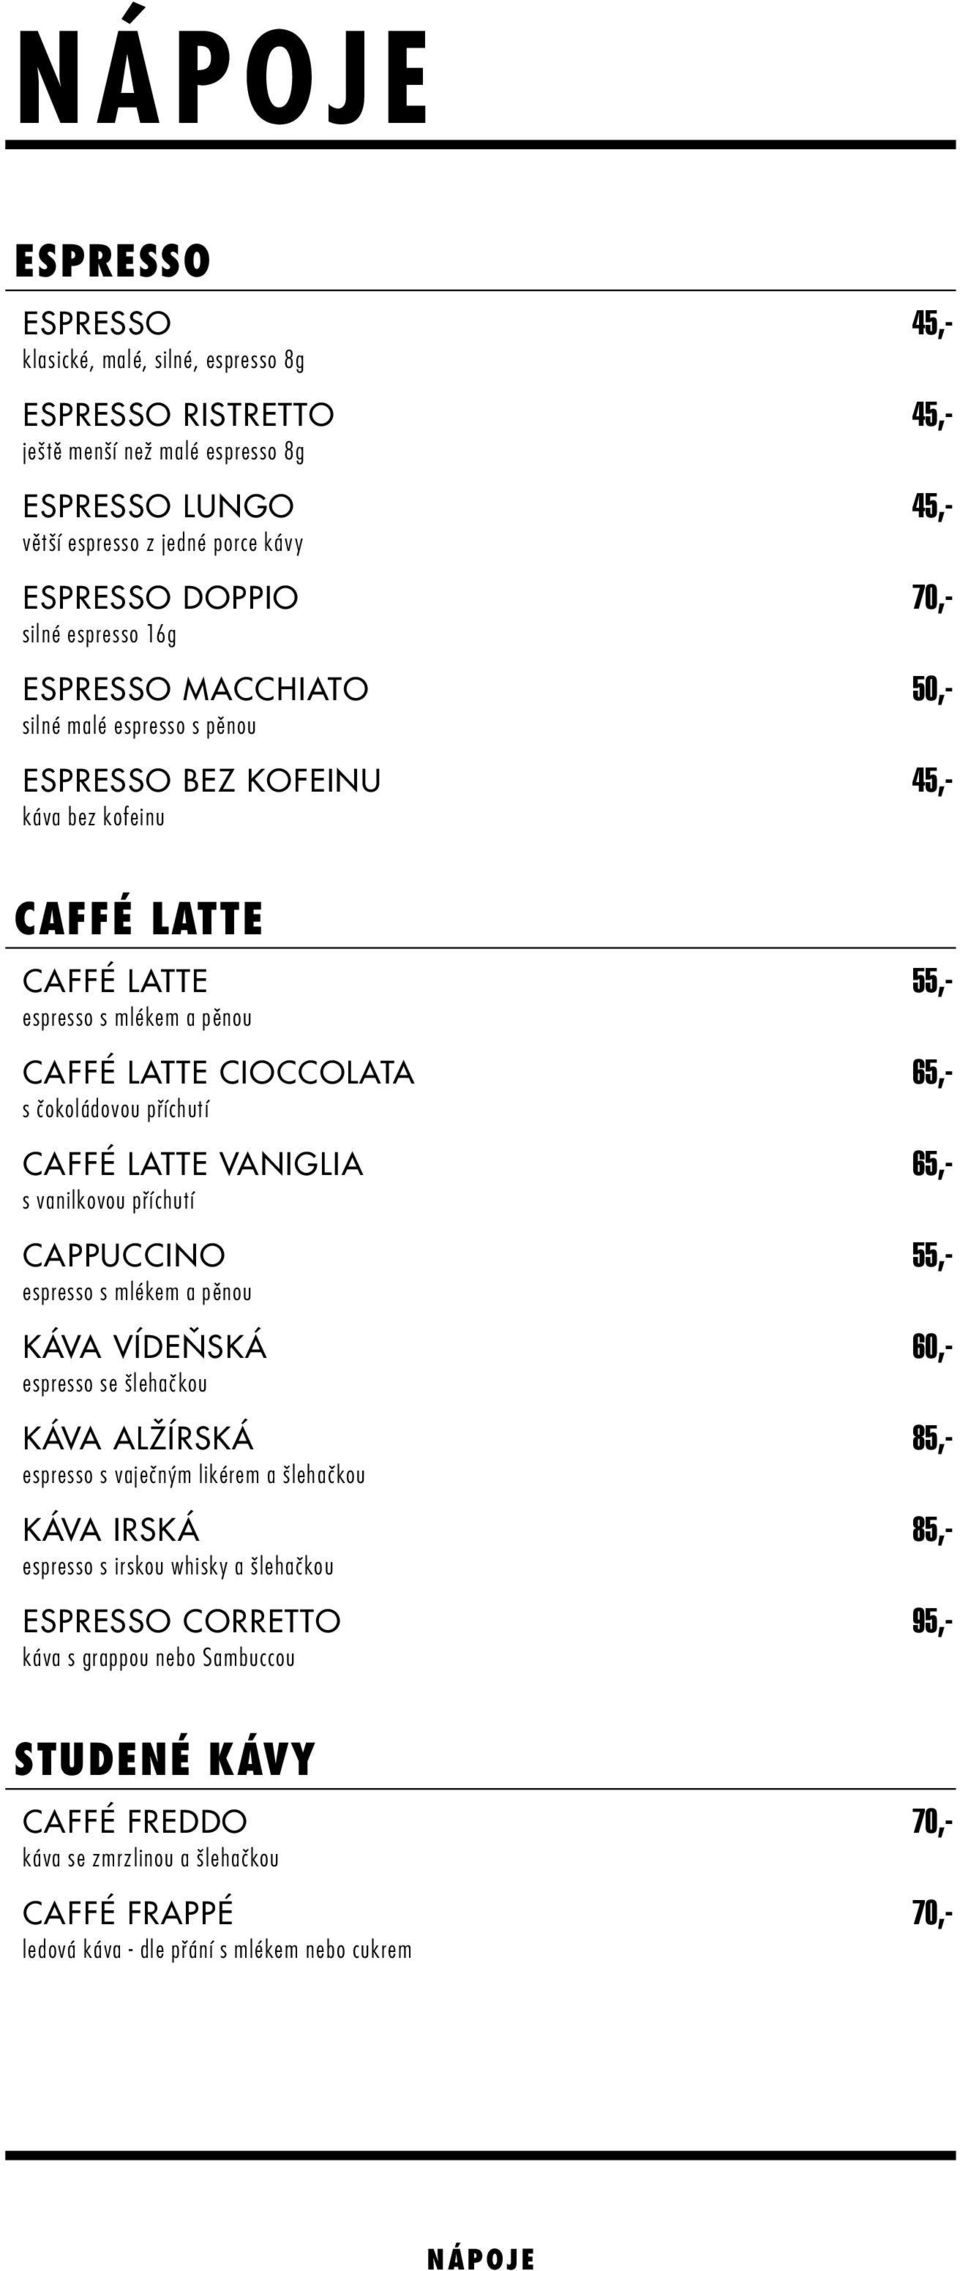 čokoládovou příchutí Caffé latte vaniglia 65,- s vanilkovou příchutí Cappuccino 55,- espresso s mlékem a pěnou Káva Vídeňská 60,- espresso se šlehačkou Káva Alžírská 85,- espresso s vaječným likérem